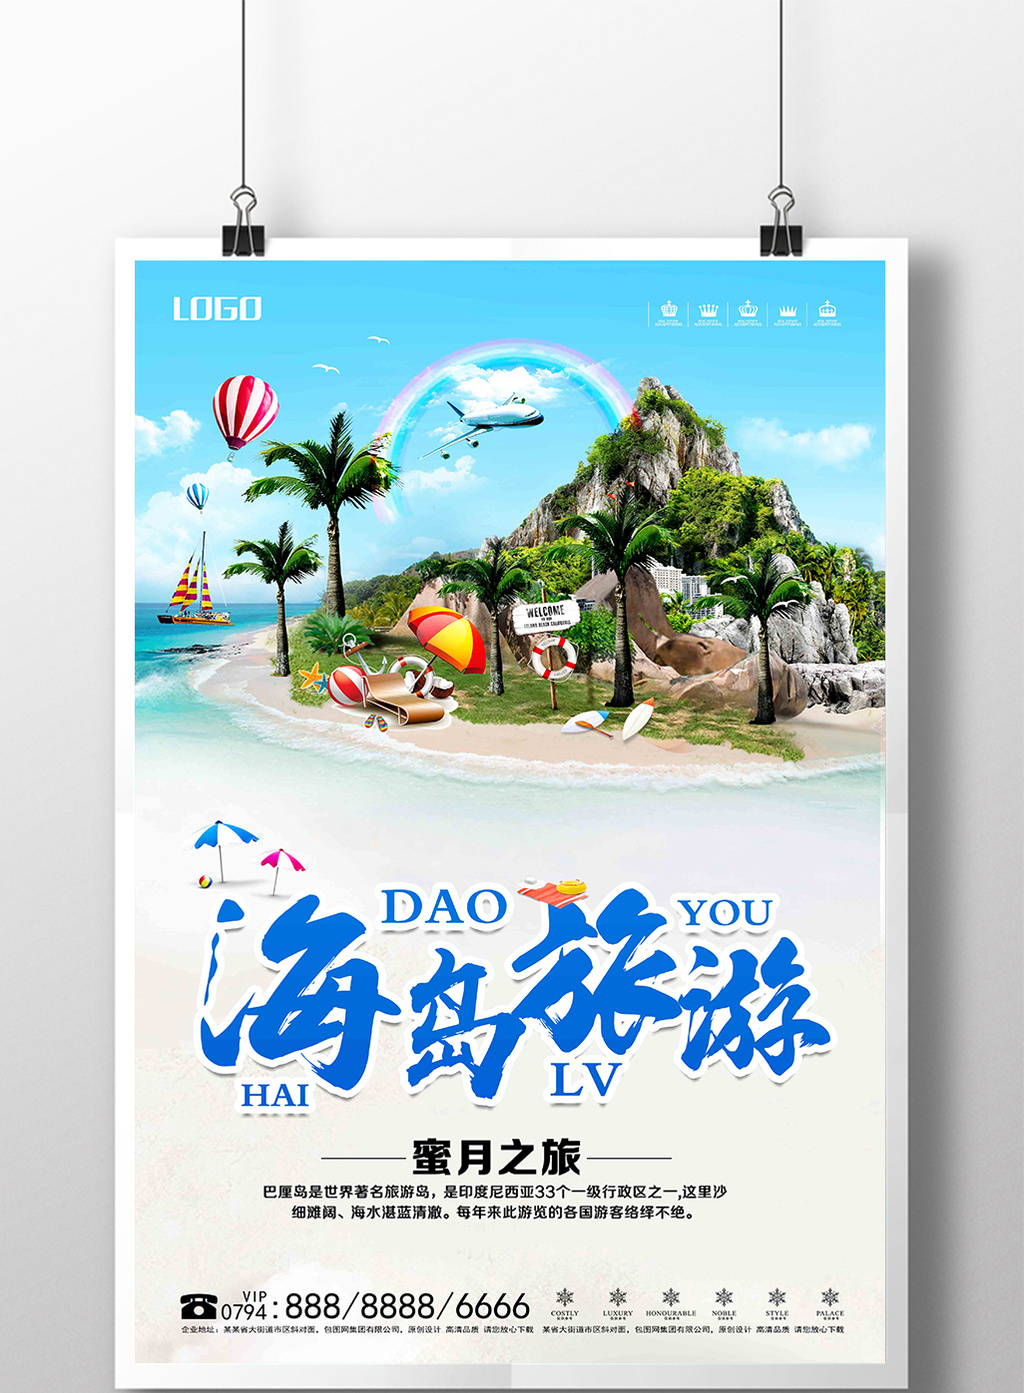 创意暑期海岛旅游海报设计